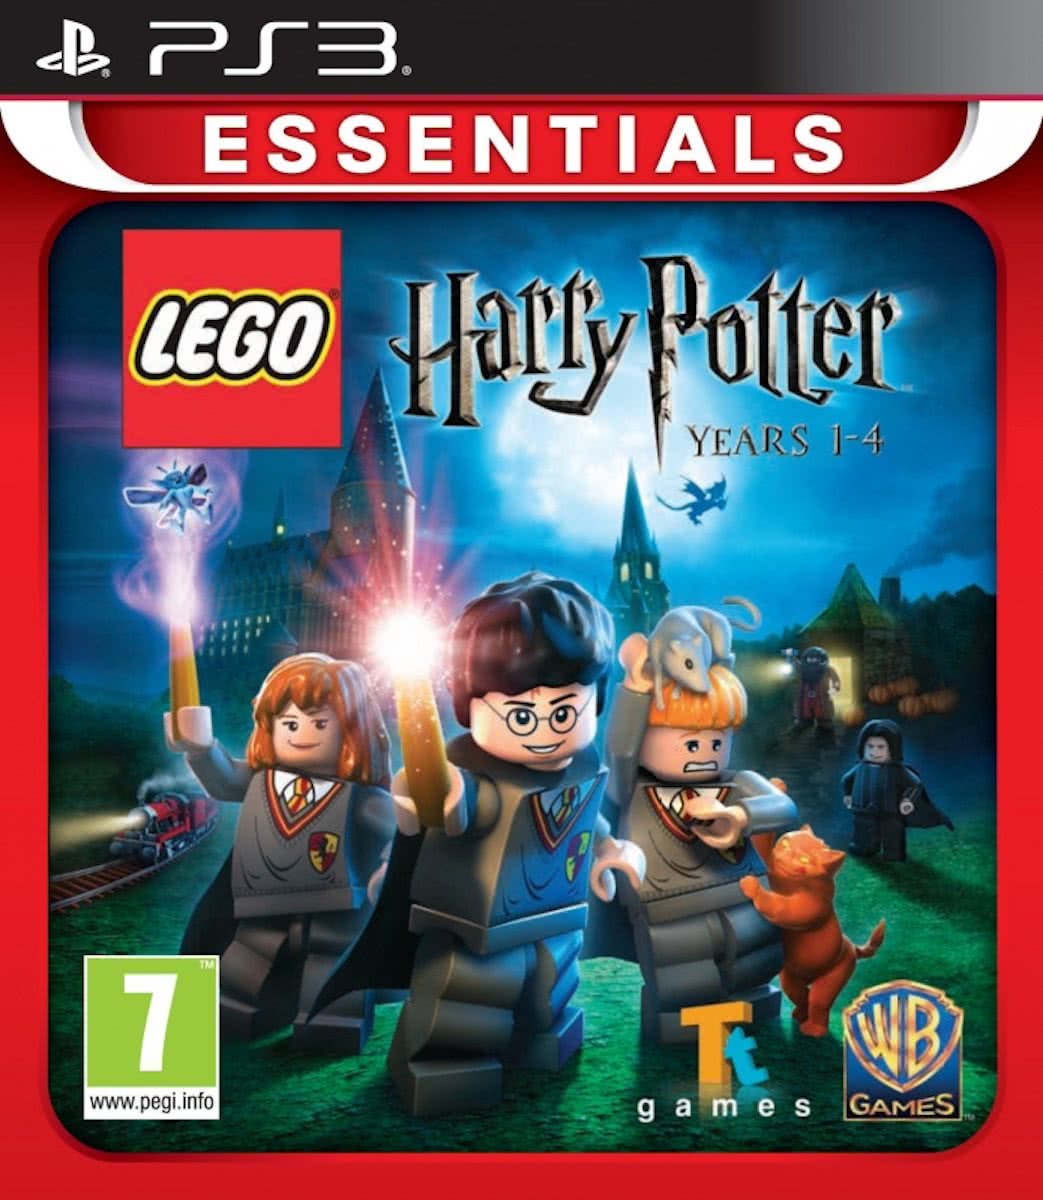   Harry Potter Jaren 1-4 (essentials)